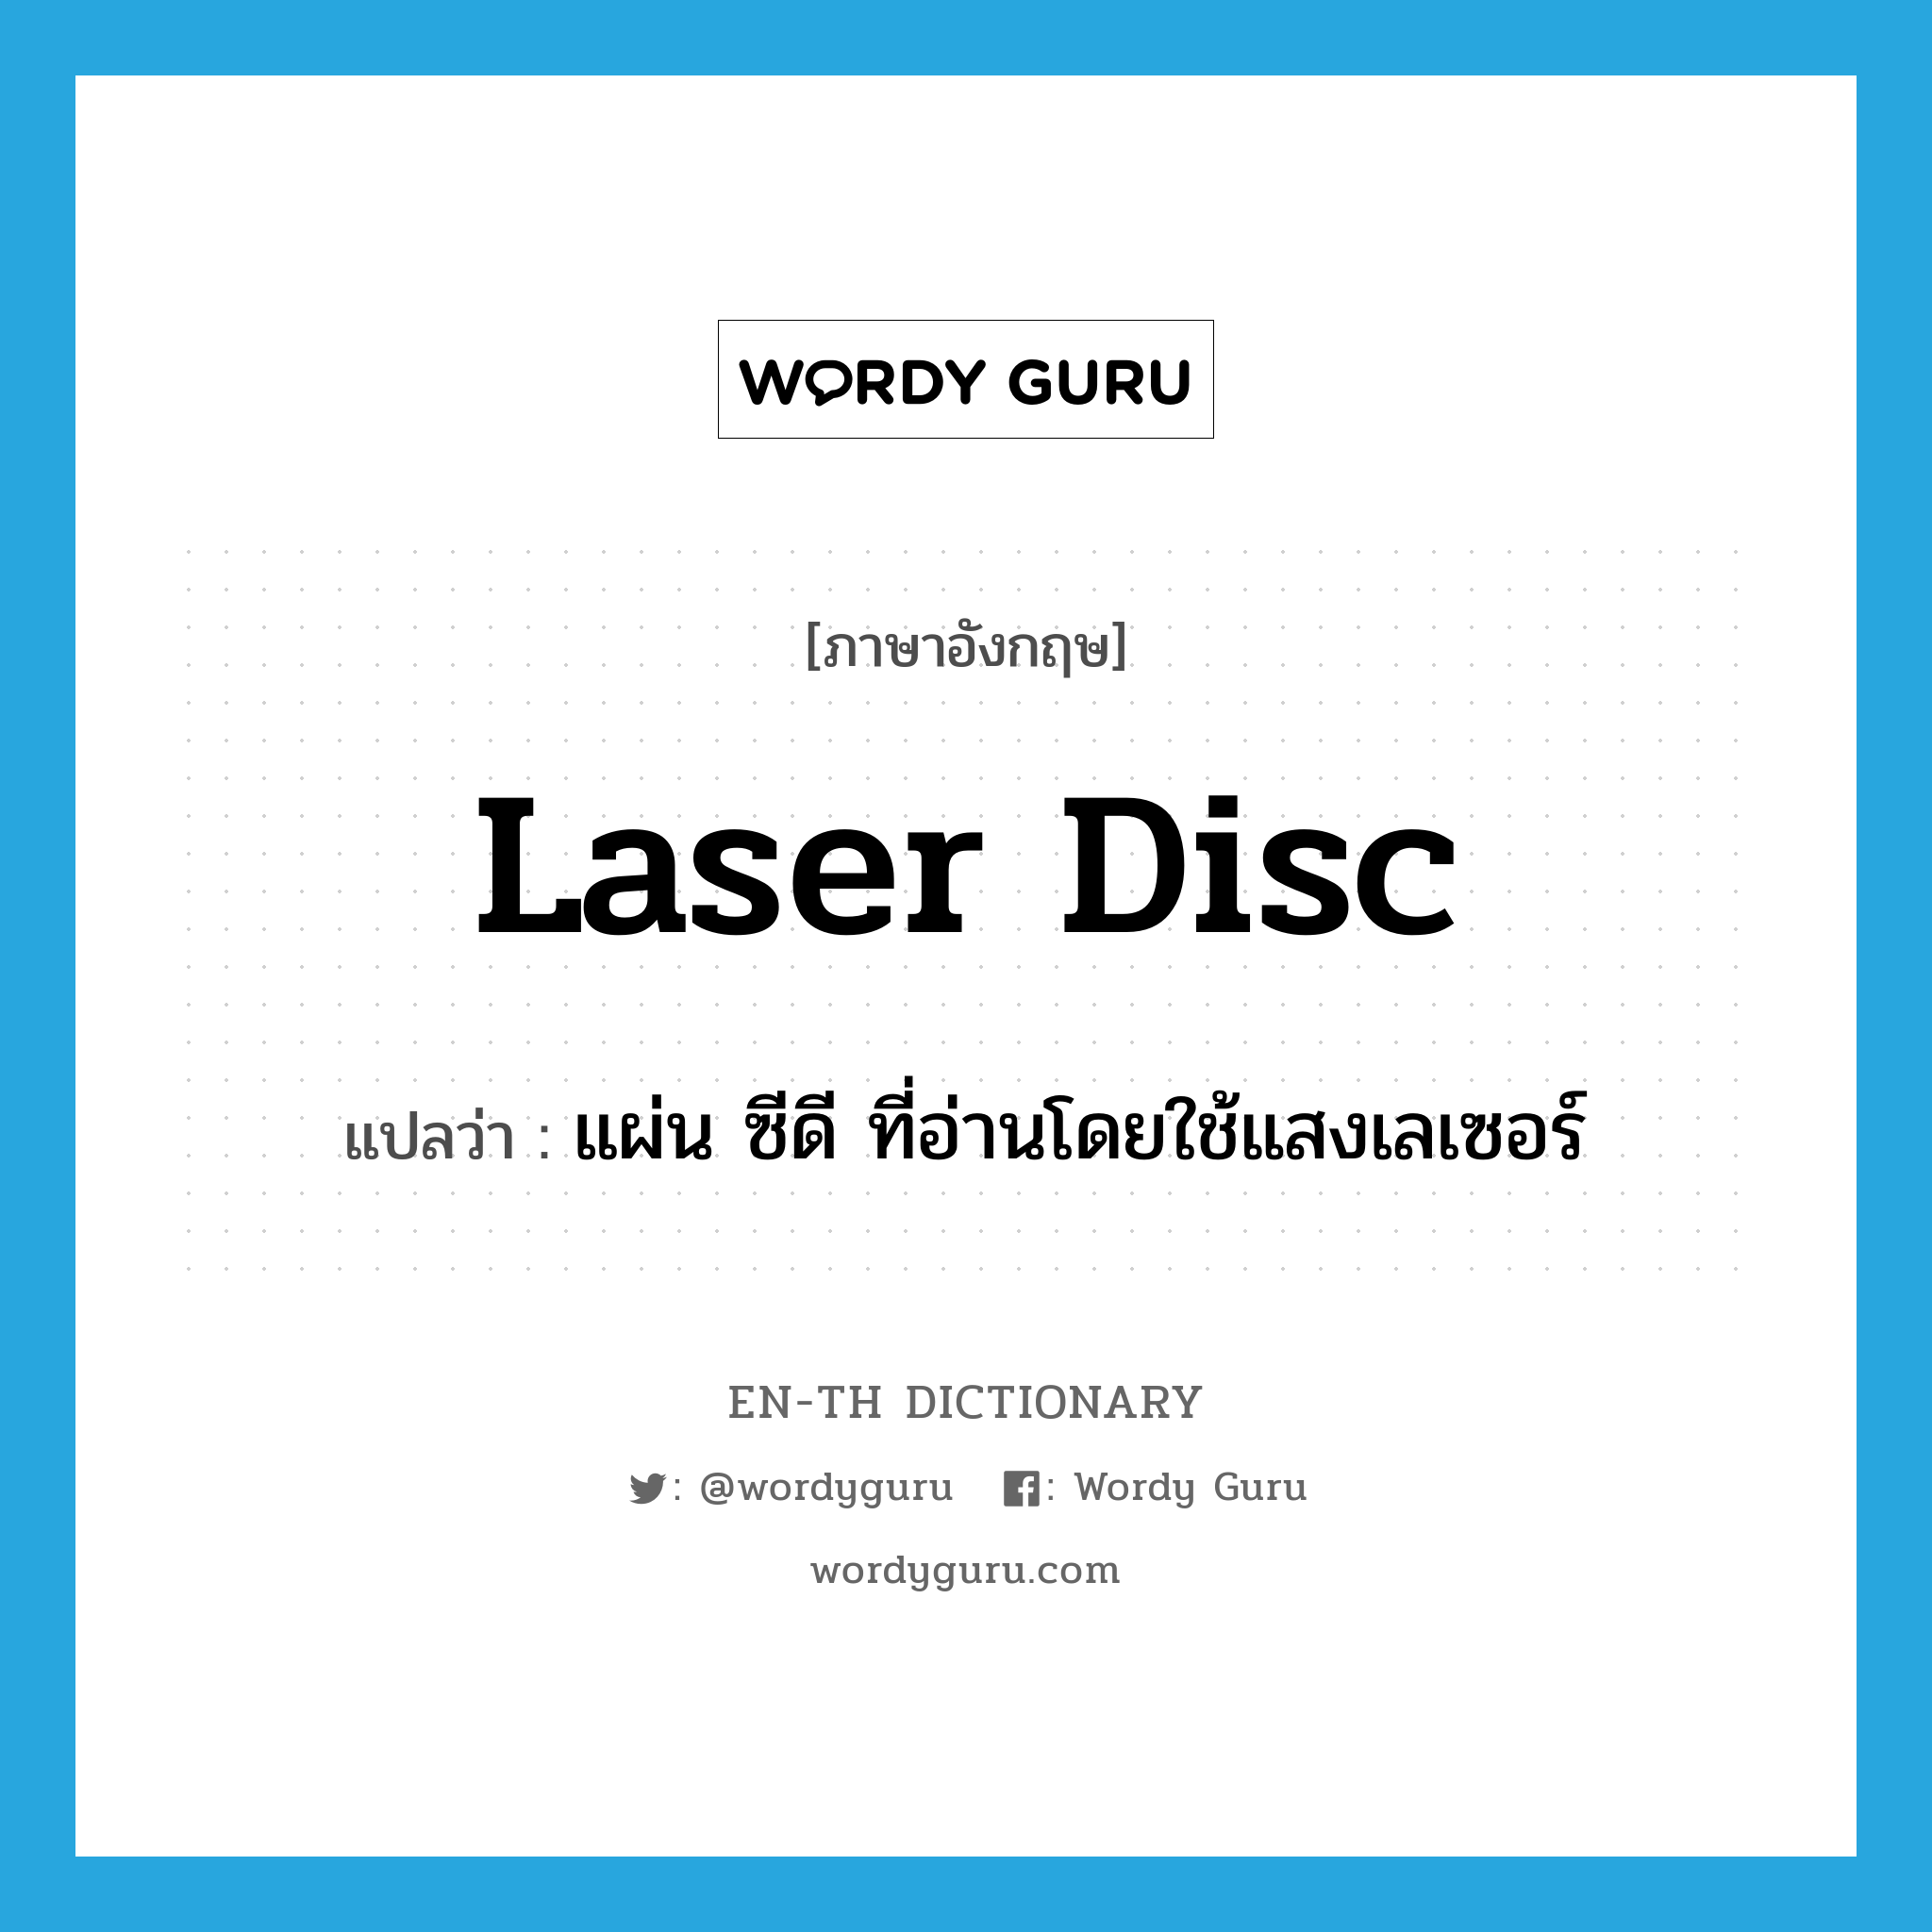 laser disc แปลว่า?, คำศัพท์ภาษาอังกฤษ laser disc แปลว่า แผ่น ซีดี ที่อ่านโดยใช้แสงเลเซอร์ ประเภท N หมวด N